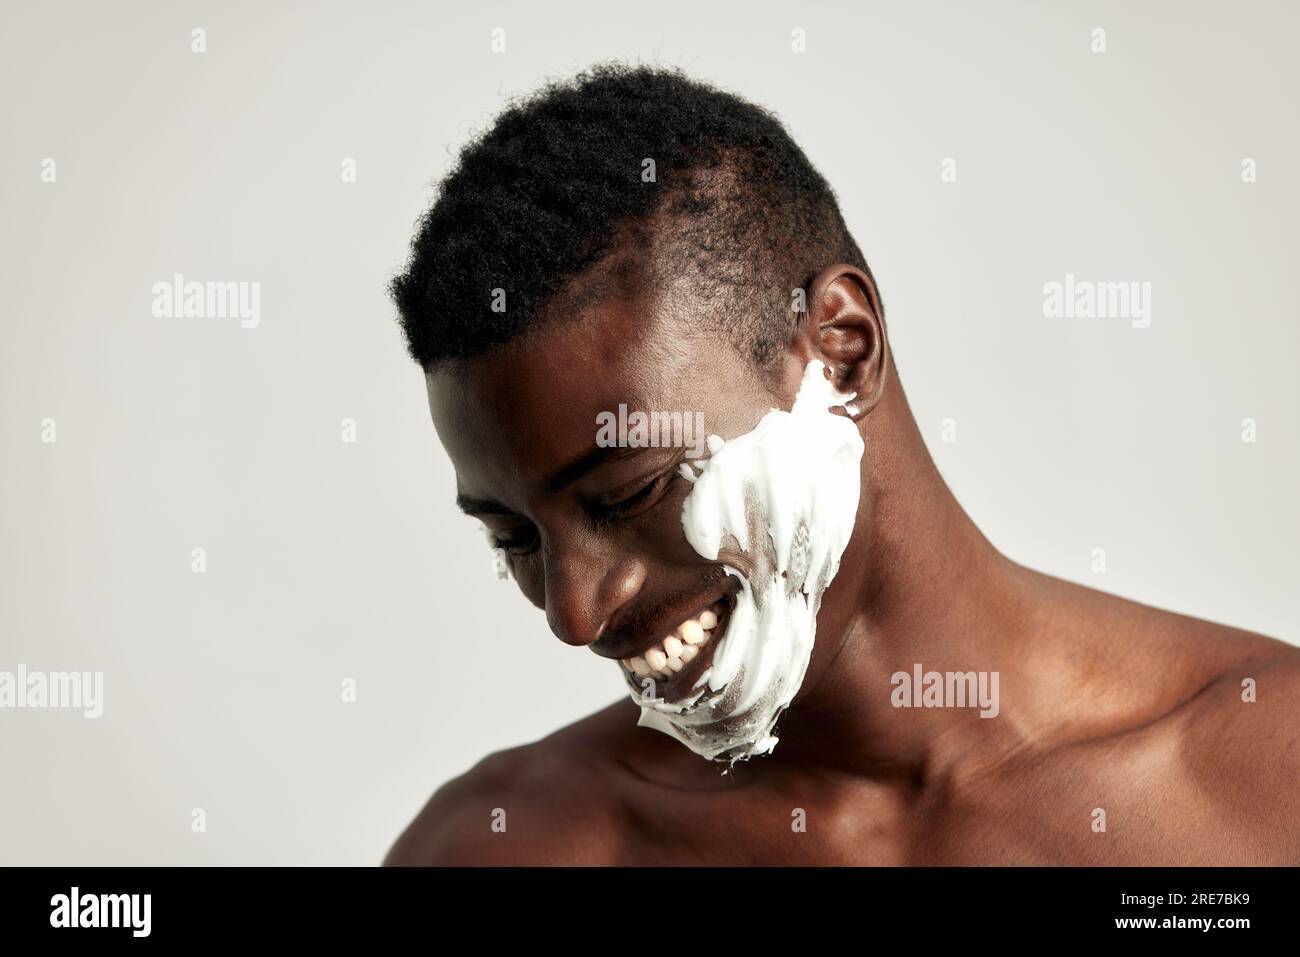 Gros plan portrait studio de beau mec noir souriant avec le torse nu et la crème sur son visage. L'homme afro-américain utilise des produits de beauté dans ses soins de la peau Banque D'Images